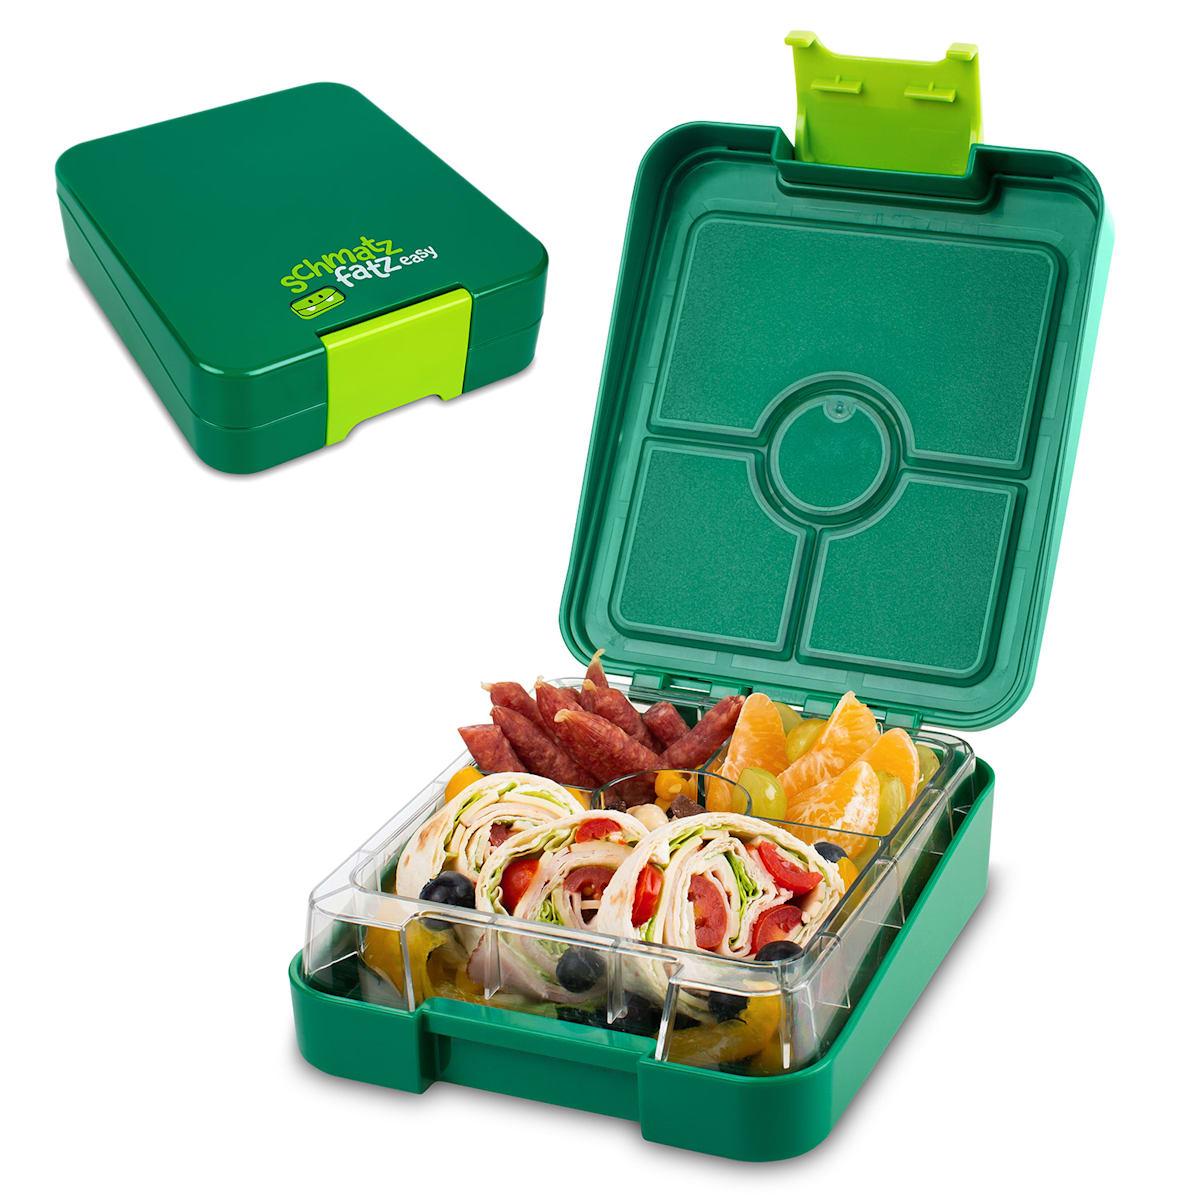 schmatzfatz junior, snack box, 4 compartments, 18 x 15 x 5 cm